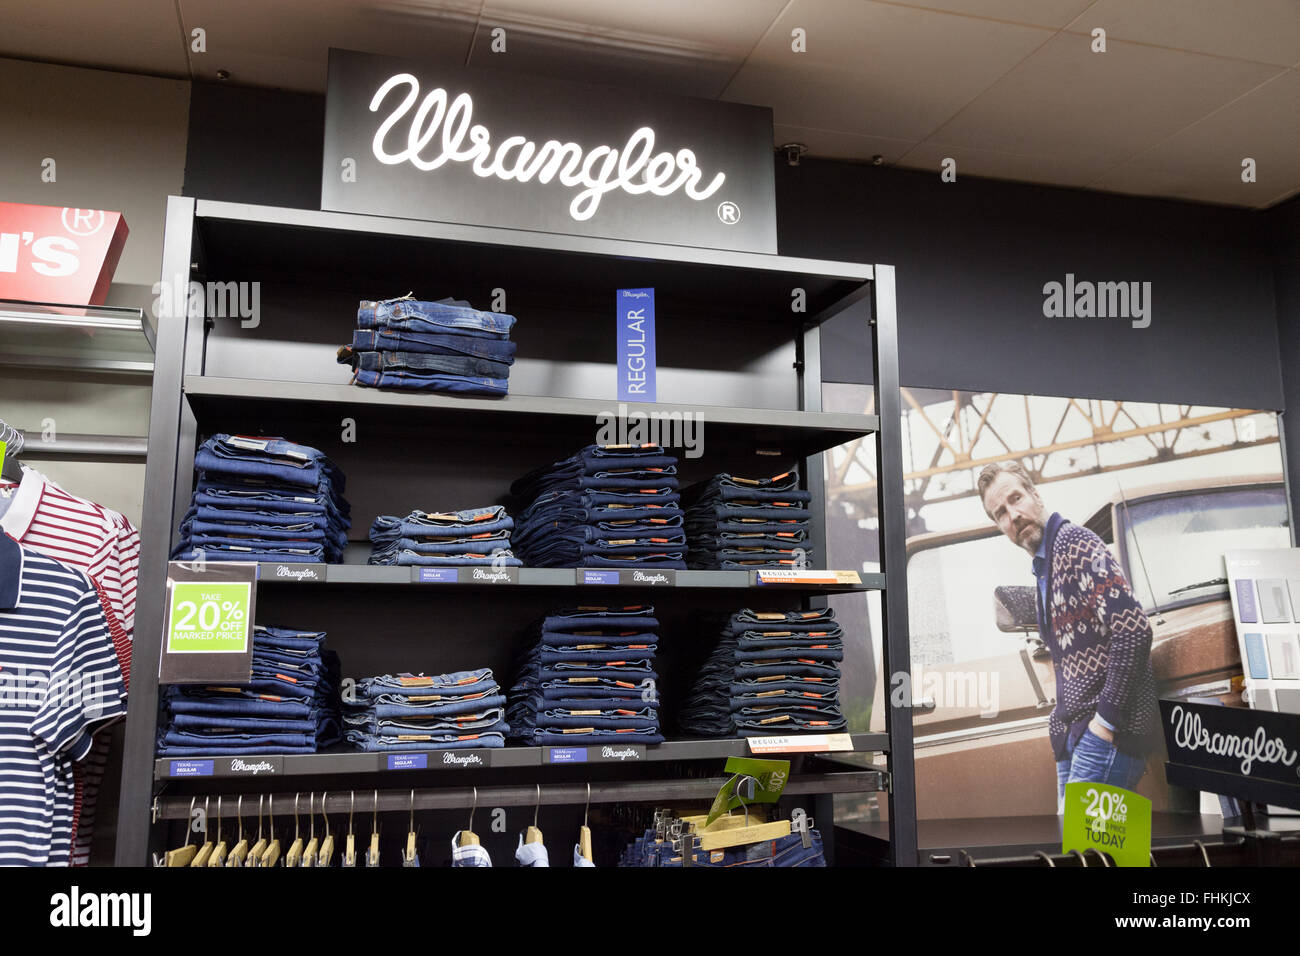 Jeans wrangler immagini e fotografie stock ad alta risoluzione - Alamy